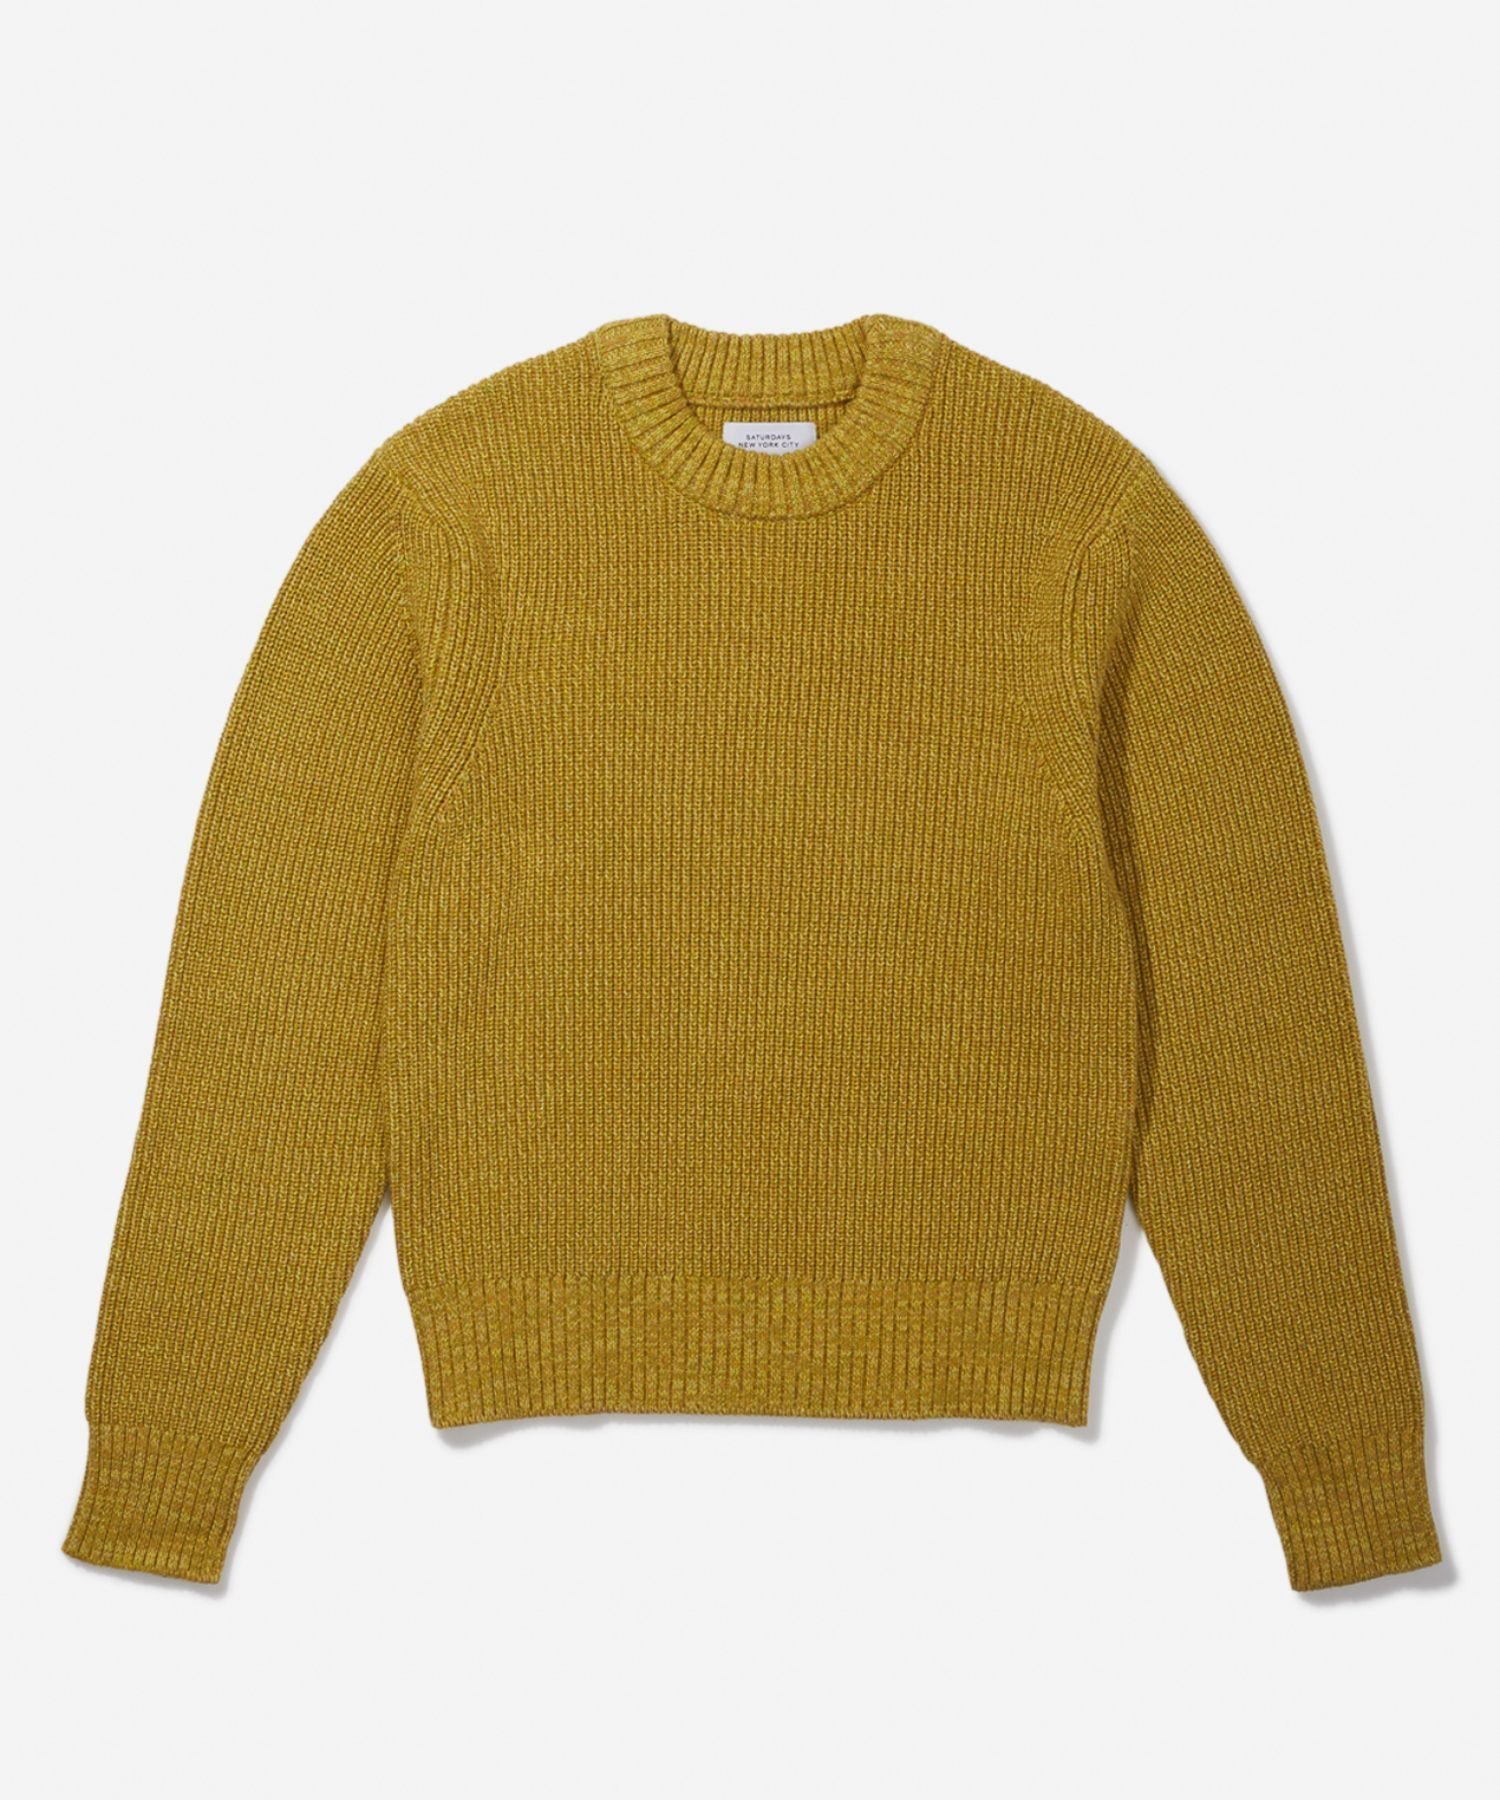 【SALE／50%OFF】Saturdays NYC Genny Melange Sweater サタデーズ ニューヨークシティ トップス ニット グリーン ネイビー【送料無料】